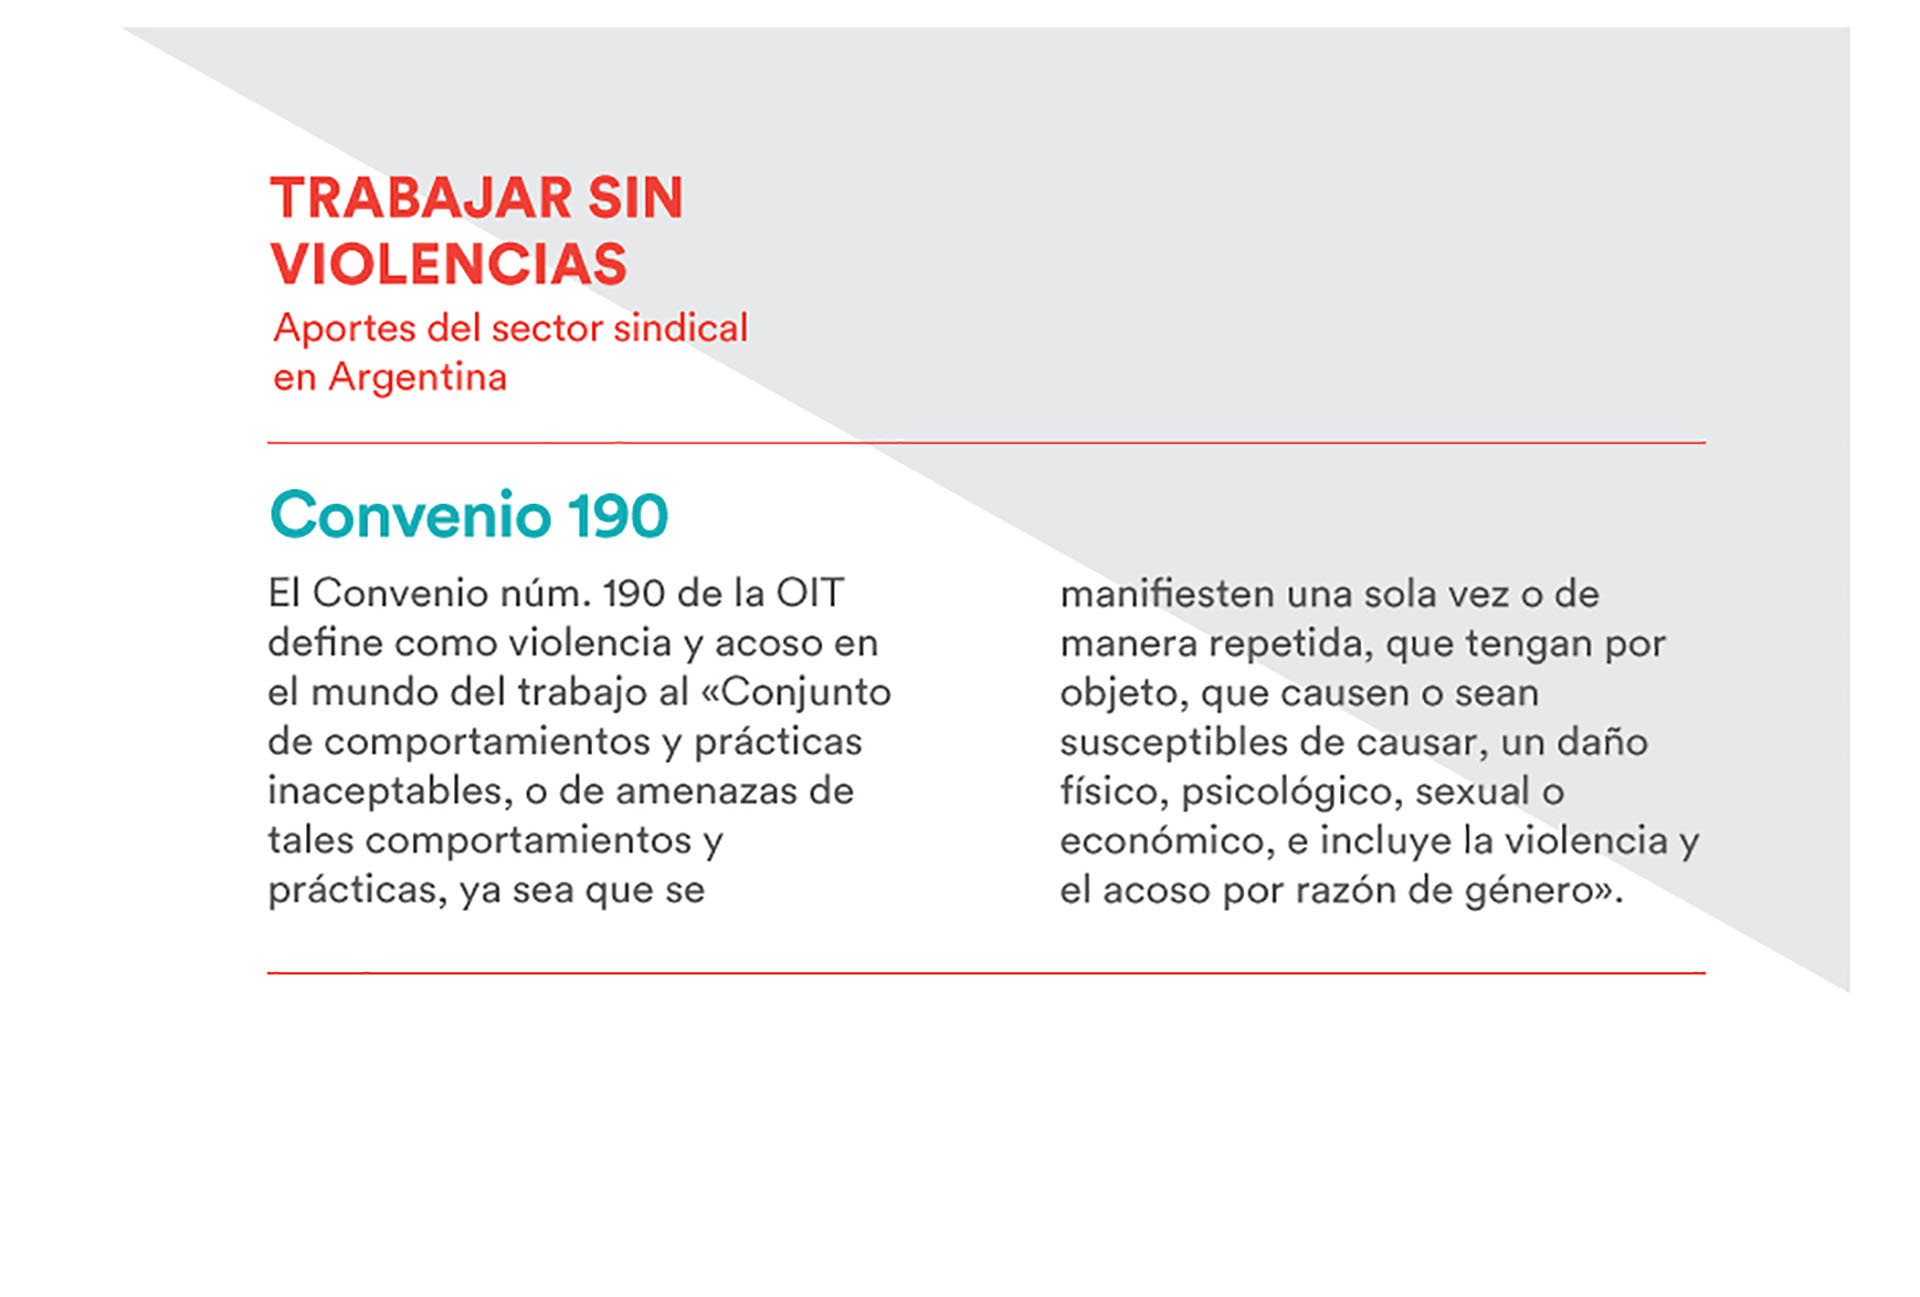 El Convenio 190 de la OIT define a la violencia laboral y el acoso como un conjunto de practicas inaceptables. Comienza a regir en febrero en Argentina